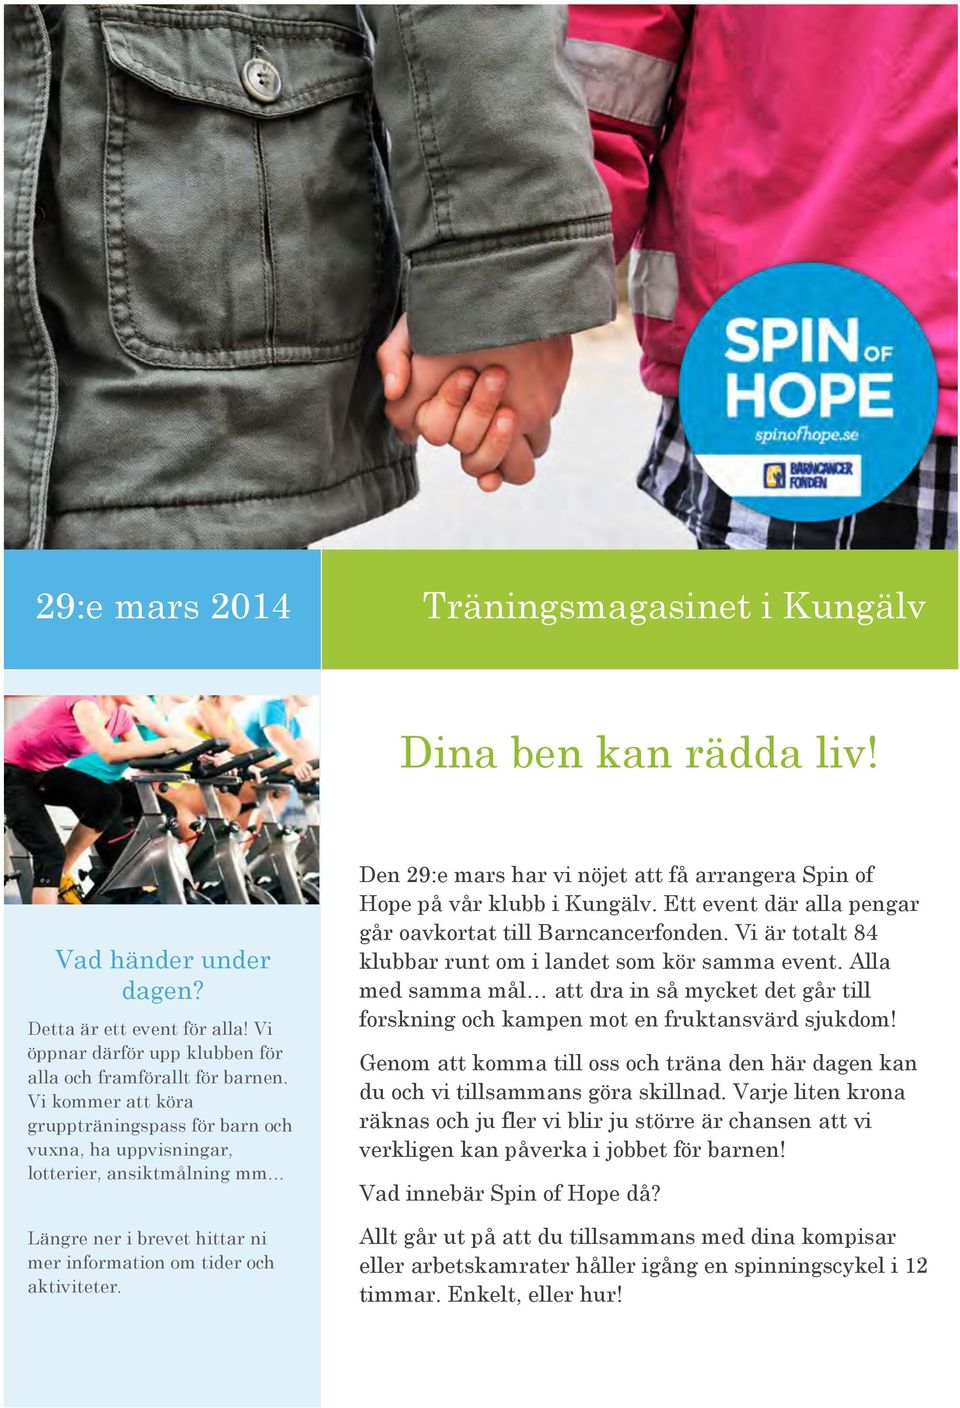 Den 29:e mars har vi nöjet att få arrangera Spin of Hope på vår klubb i Kungälv. Ett event där alla pengar går oavkortat till Barncancerfonden.